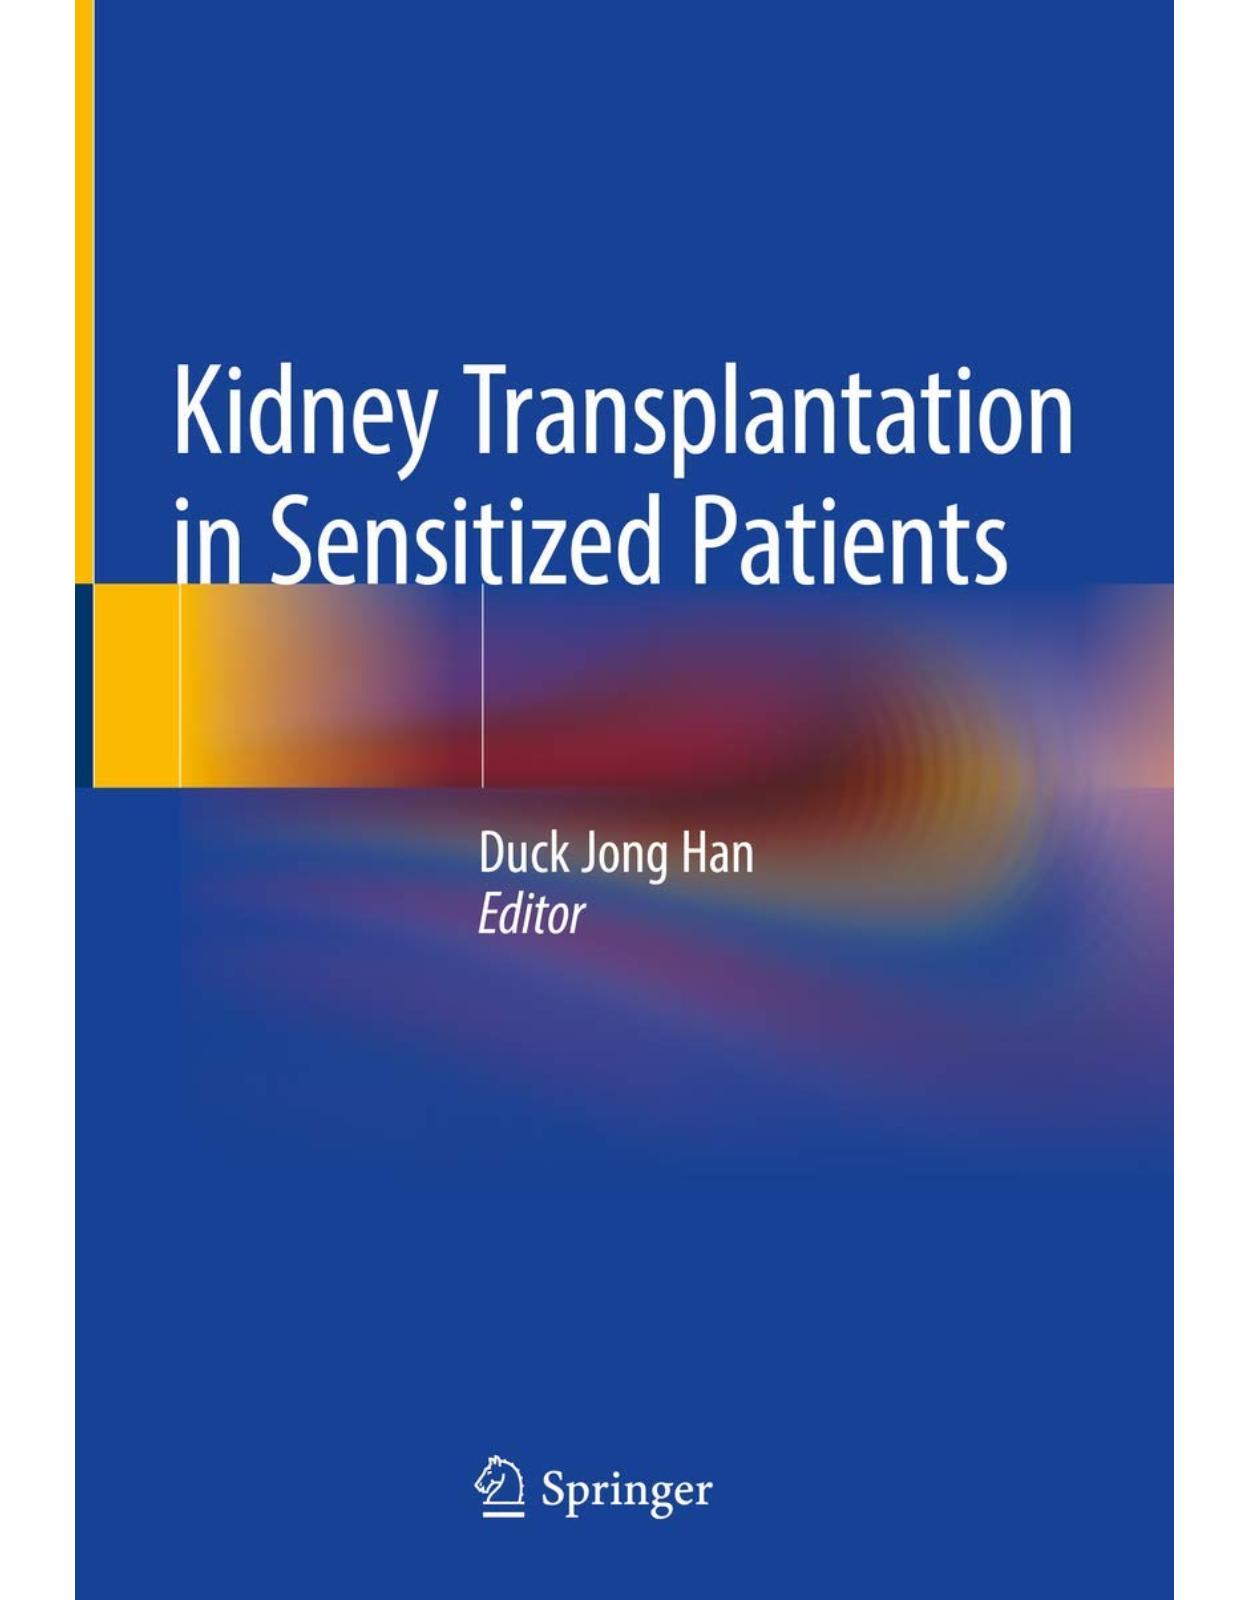 Kidney Transplantation in Sensitized Patients